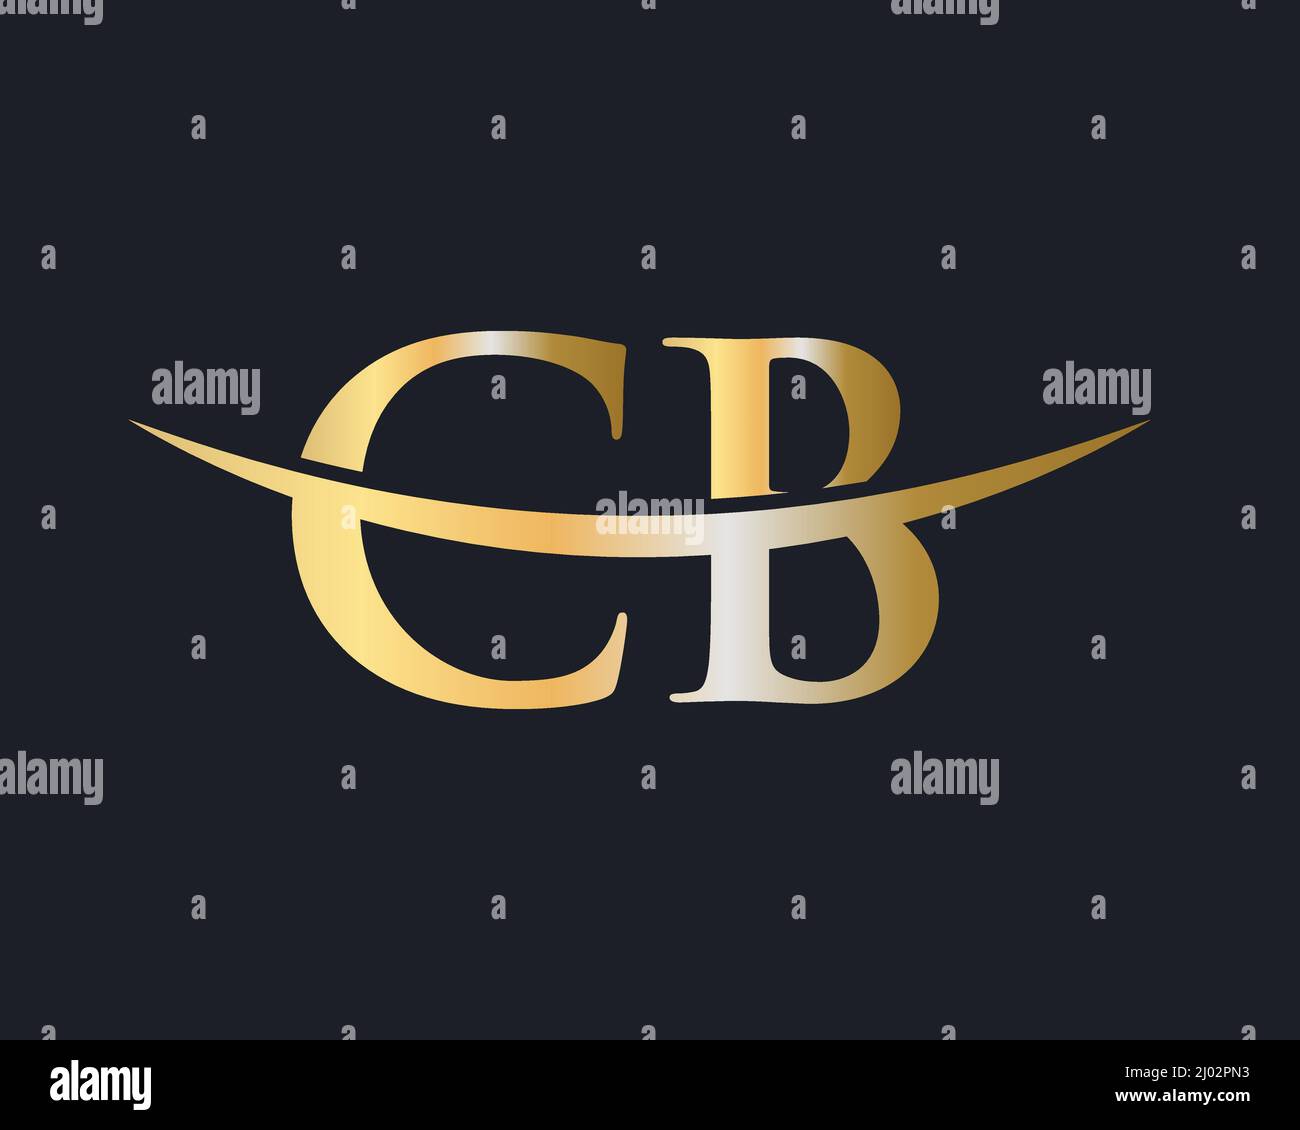 Initial Monogram Letter CB Logo Design Vector. CB Logo Design Template Stock Vector